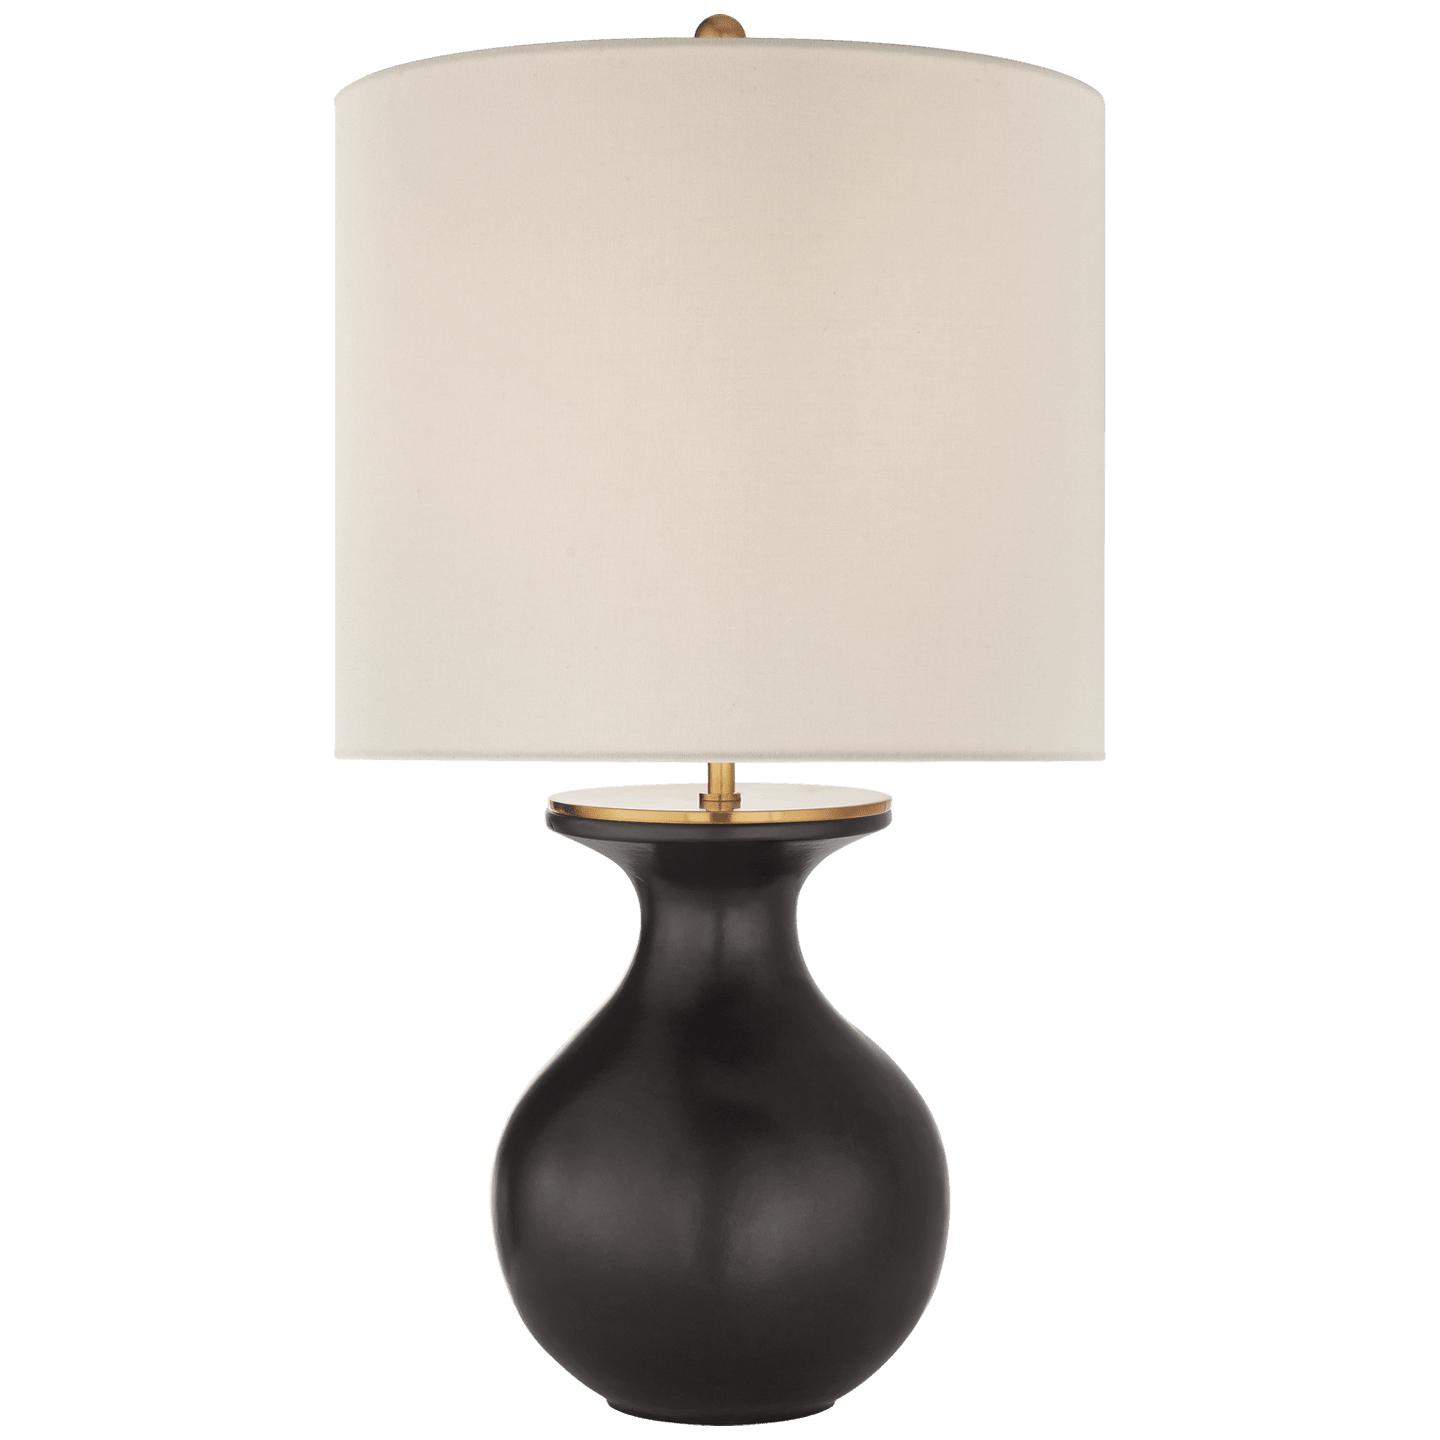 Купить Настольная лампа Albie Small Desk Lamp в интернет-магазине roooms.ru